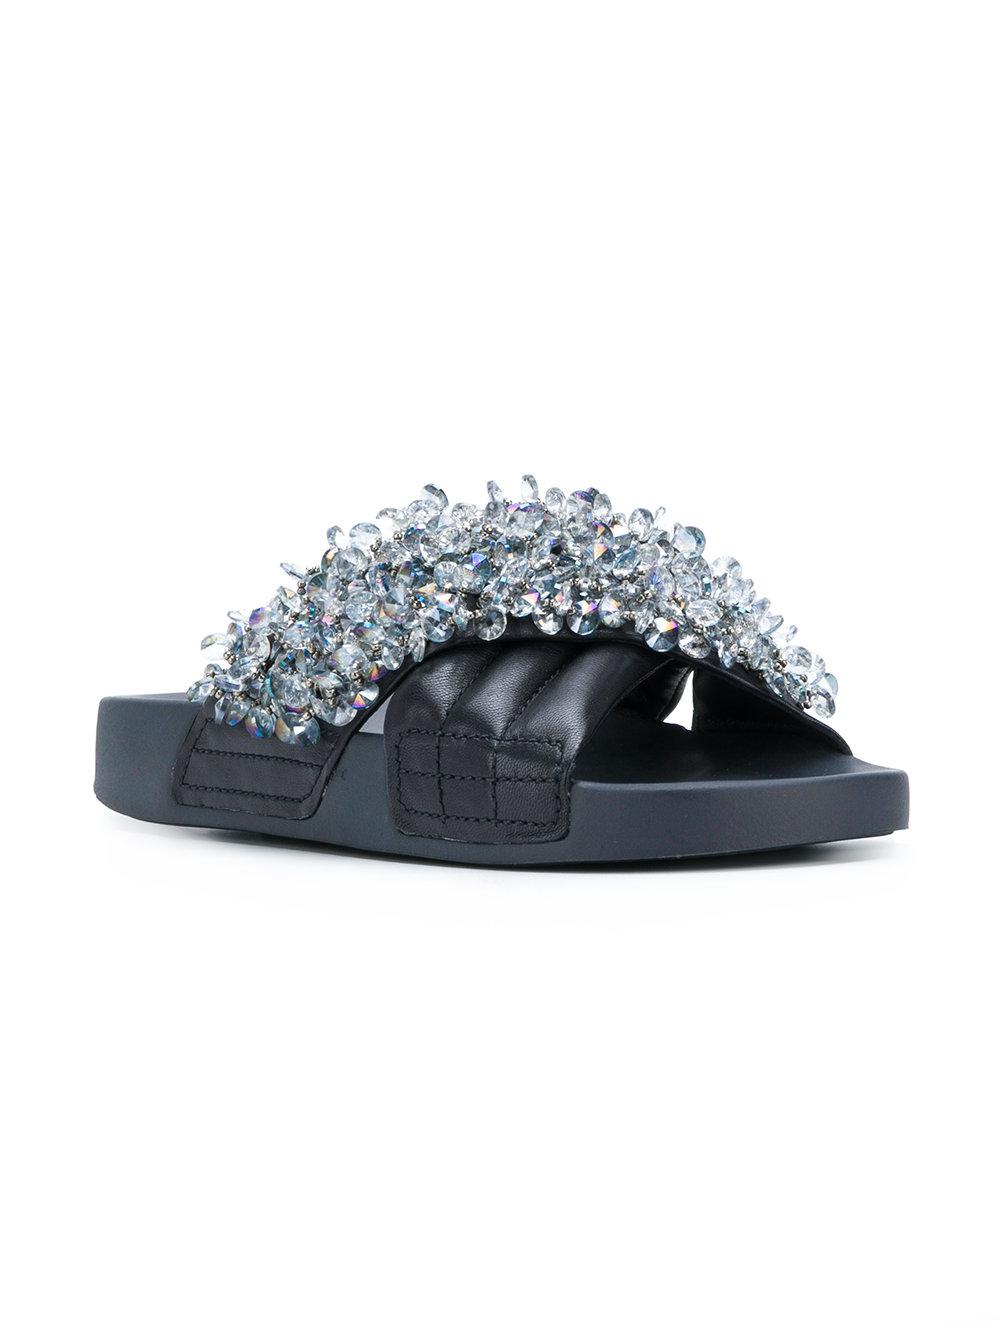 Descubrir 30+ imagen tory burch crystal-embellished slide sandals